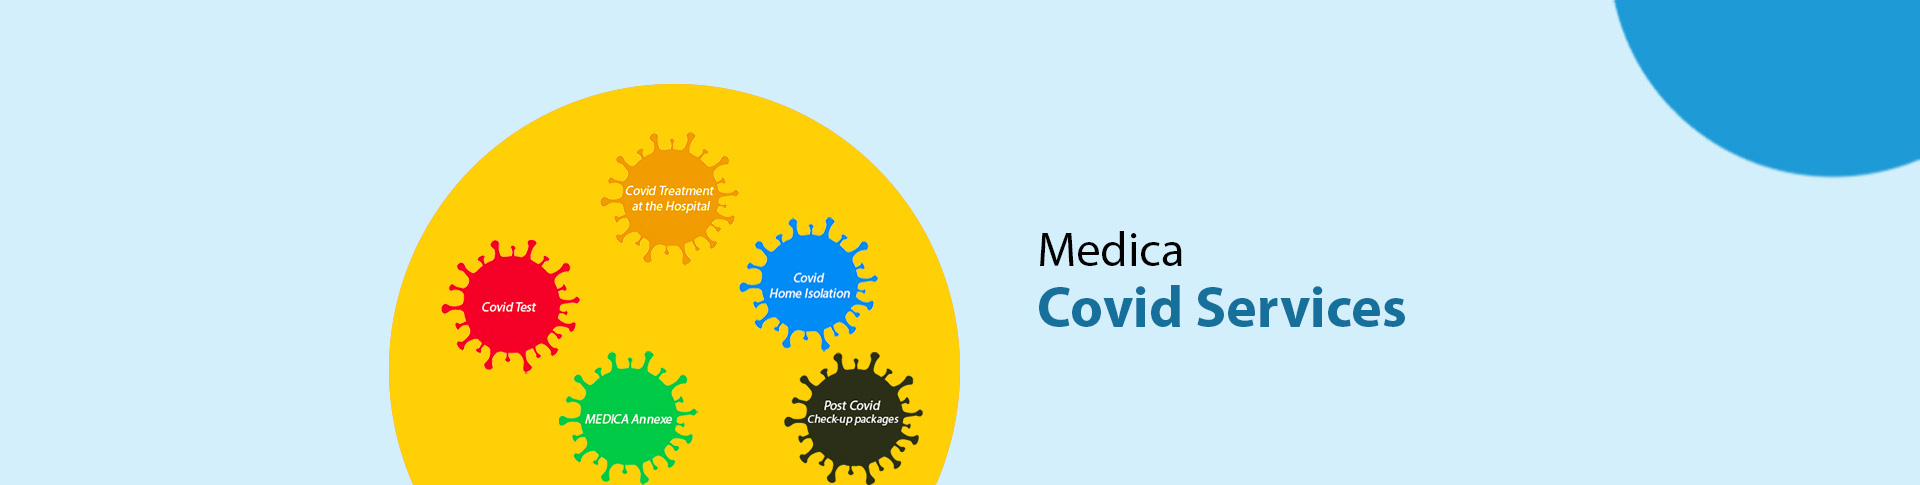 Medica Covid Services